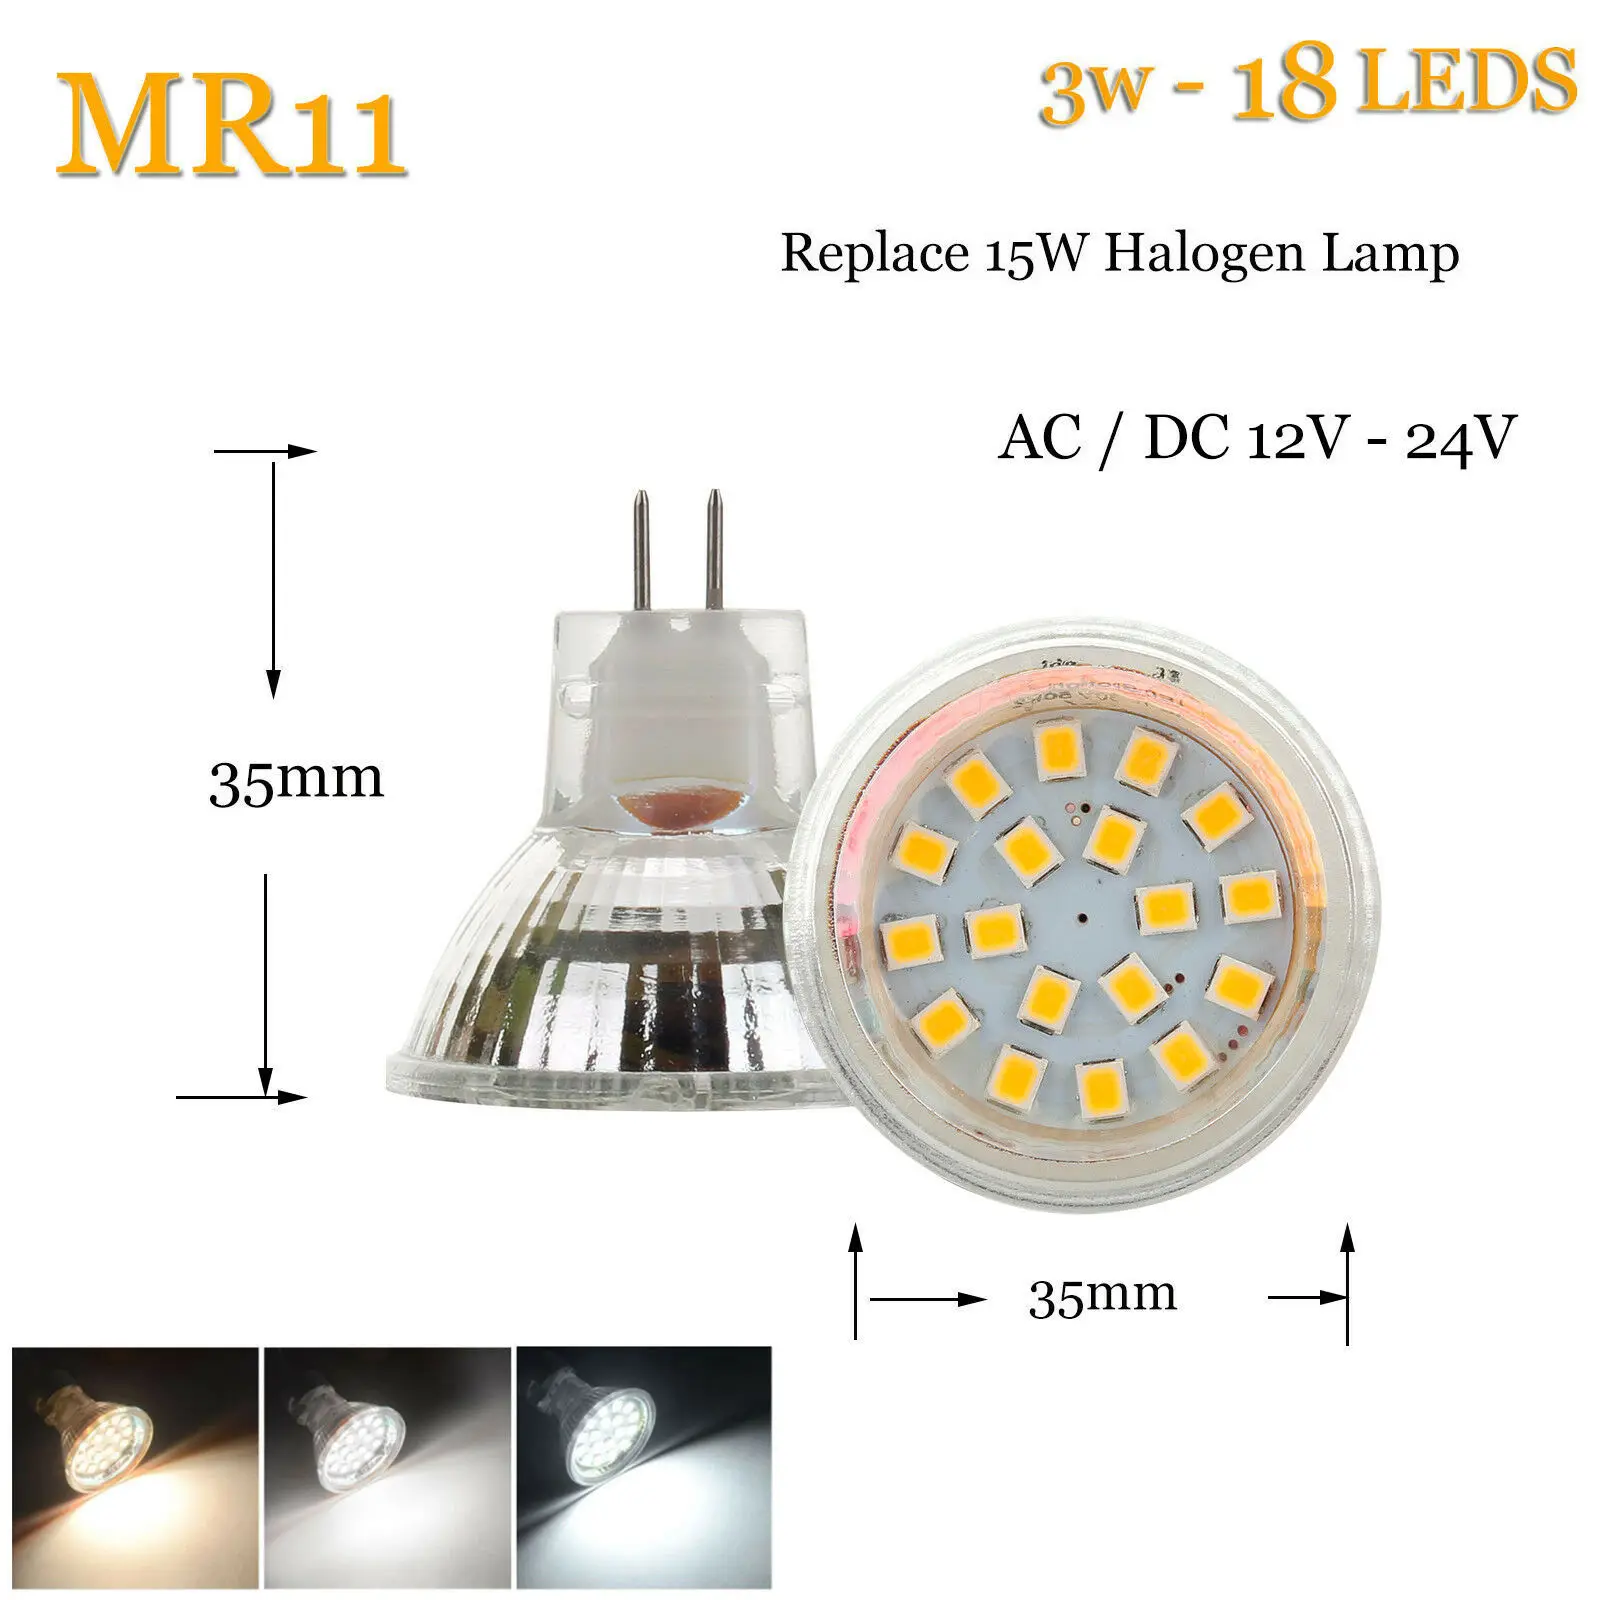 10x35 мм светодиодный лампы MR11 GU4 2 Вт 3W 120LM 150LM светодиодный лампы 2835 SMD теплый холодный нейтральный белый 12 V-24 V лампы заменить галогенные лампы освещения - Испускаемый цвет: 3W